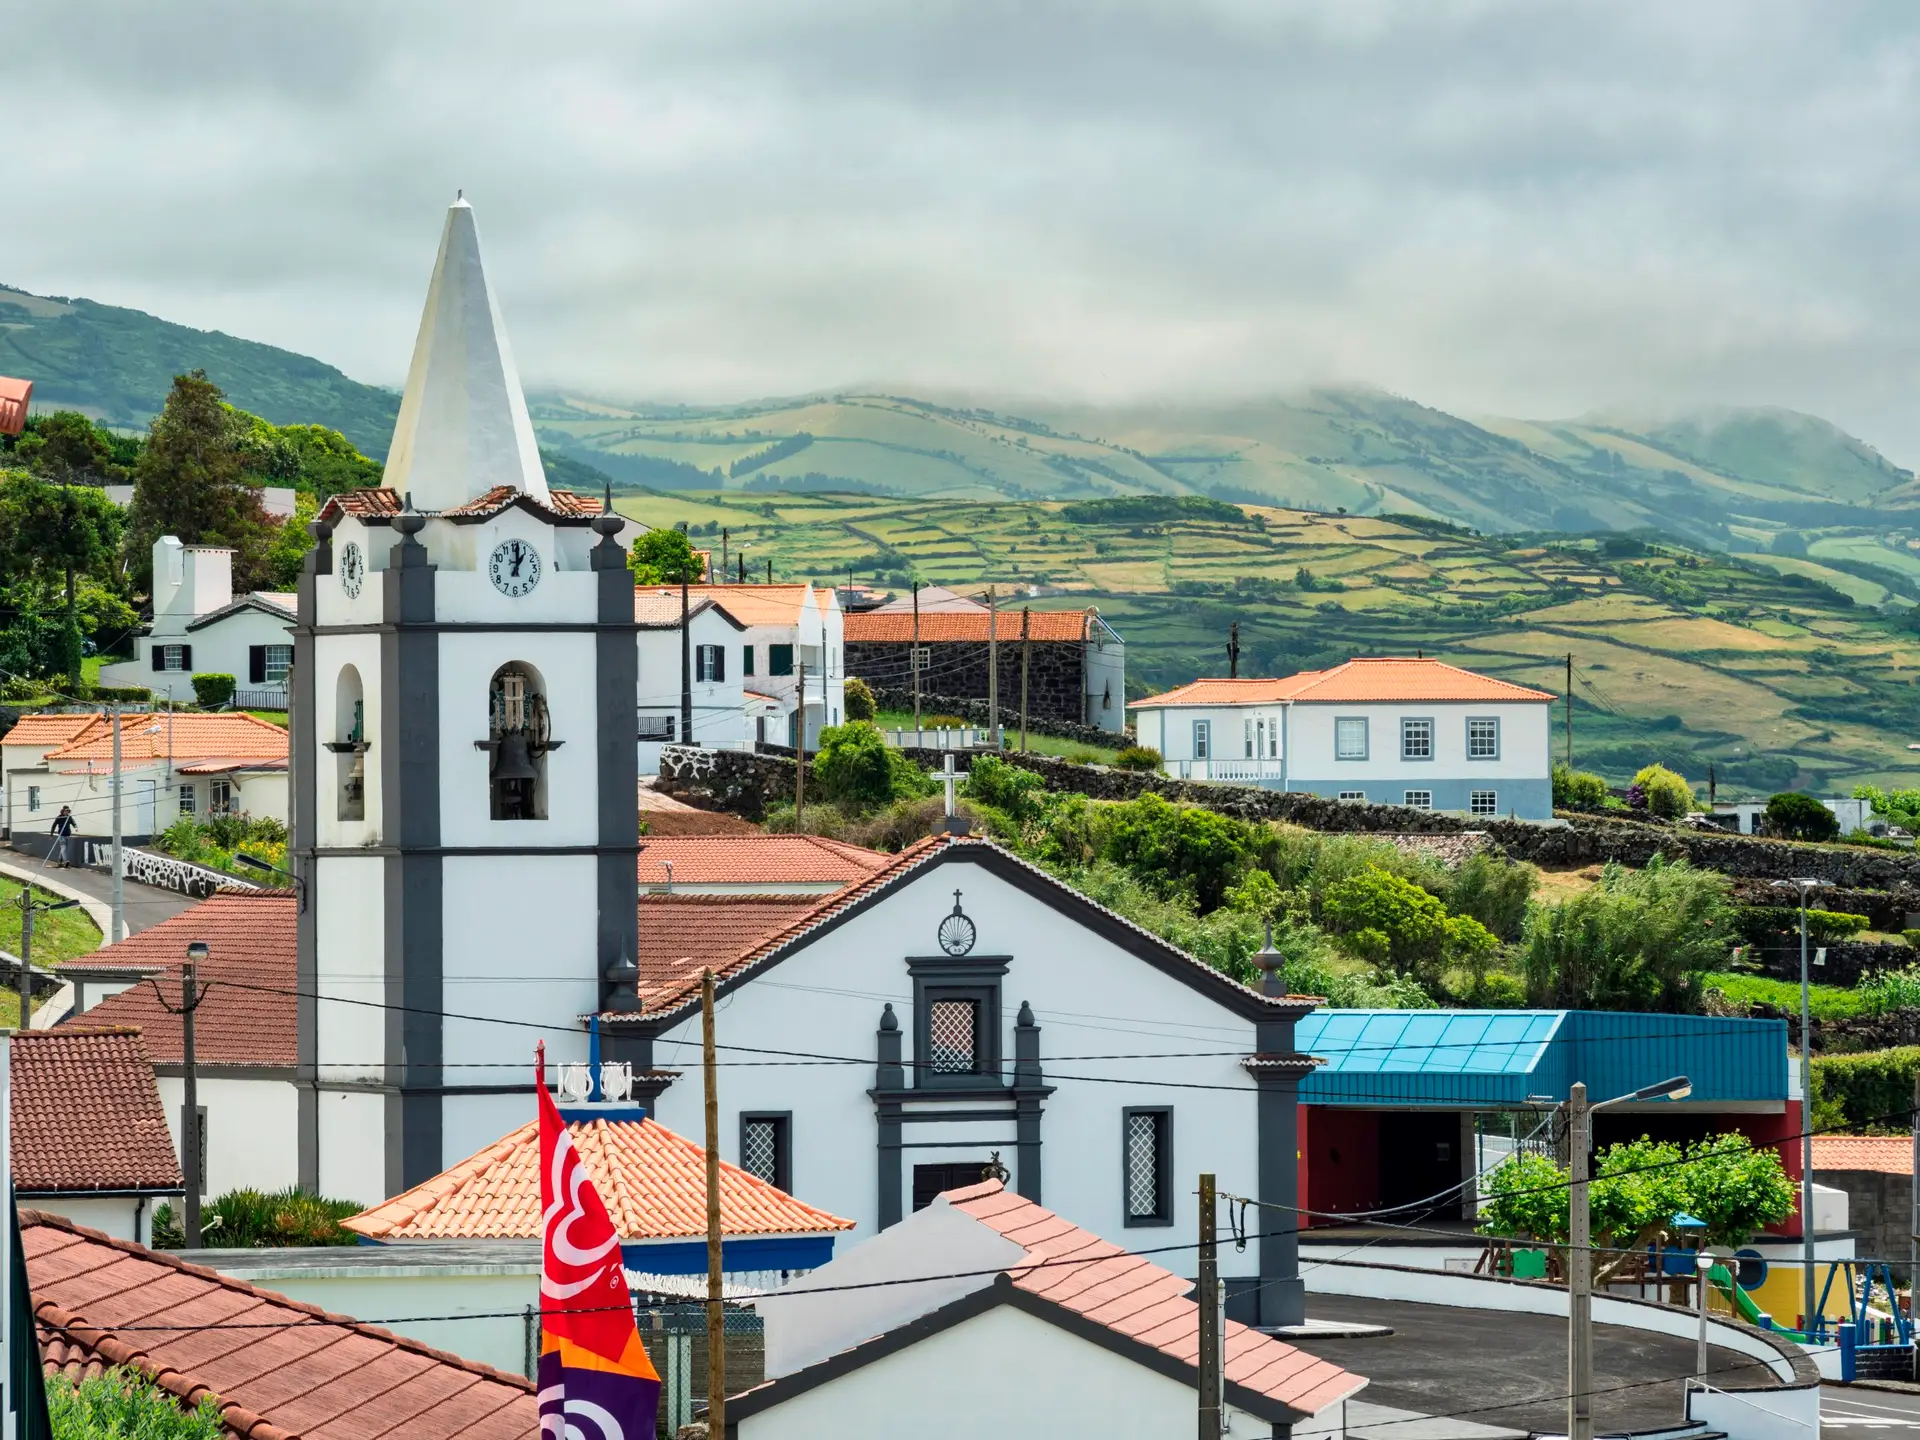 Crise sismovulcânica nos Açores: “A normalidade já regressou” a São Jorge